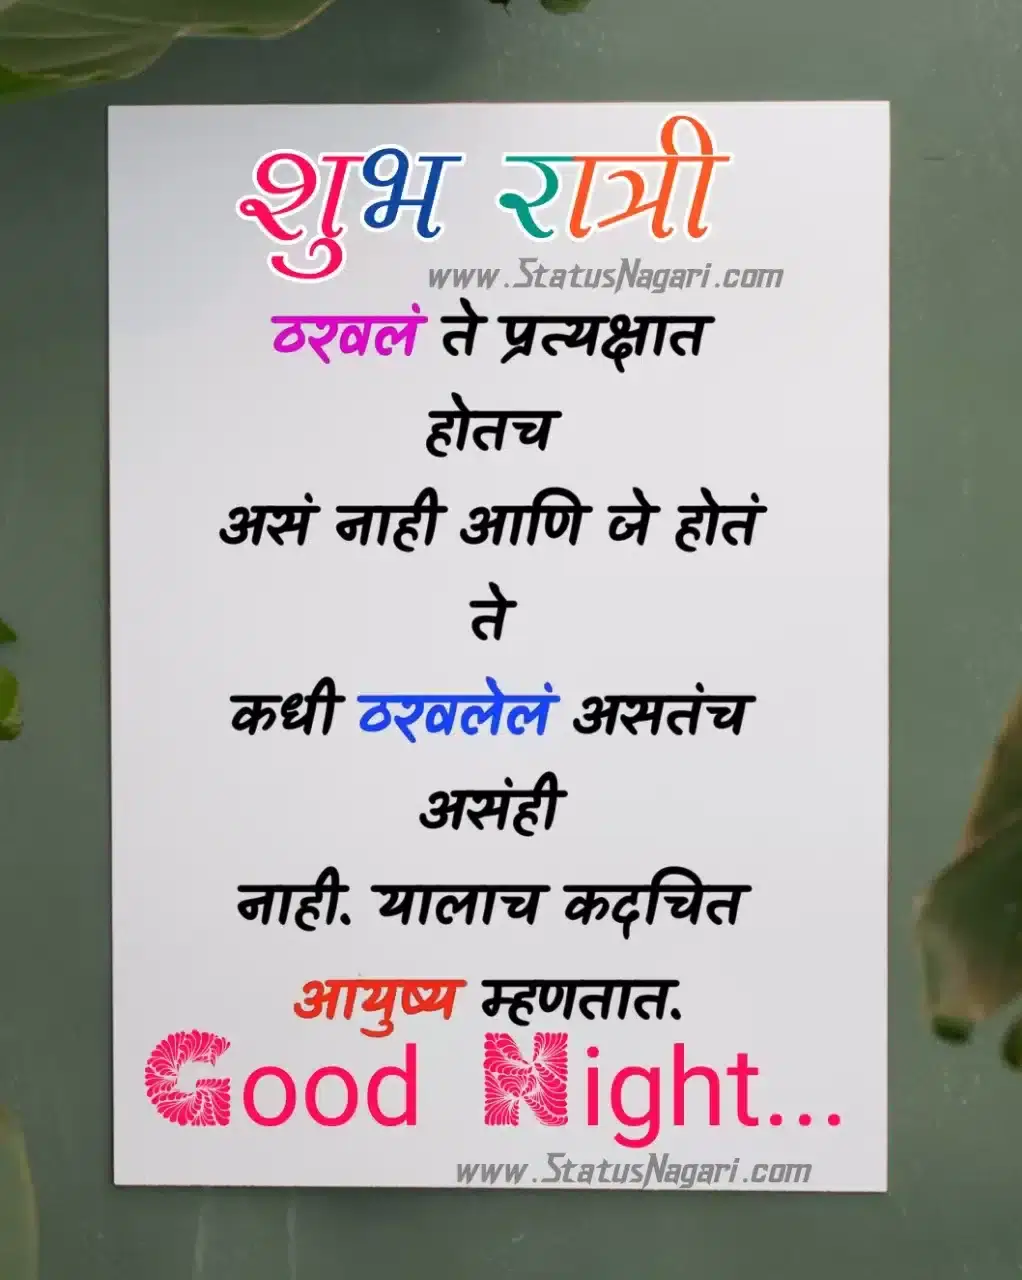 marathi images good night marathi message शुभ रात्री मराठी गुड नाईट शुभ रात्री शुभ रात्री मराठी मेसेज शुभ रात्री फुले गुड नाईट #शुभ रात्री good night pic